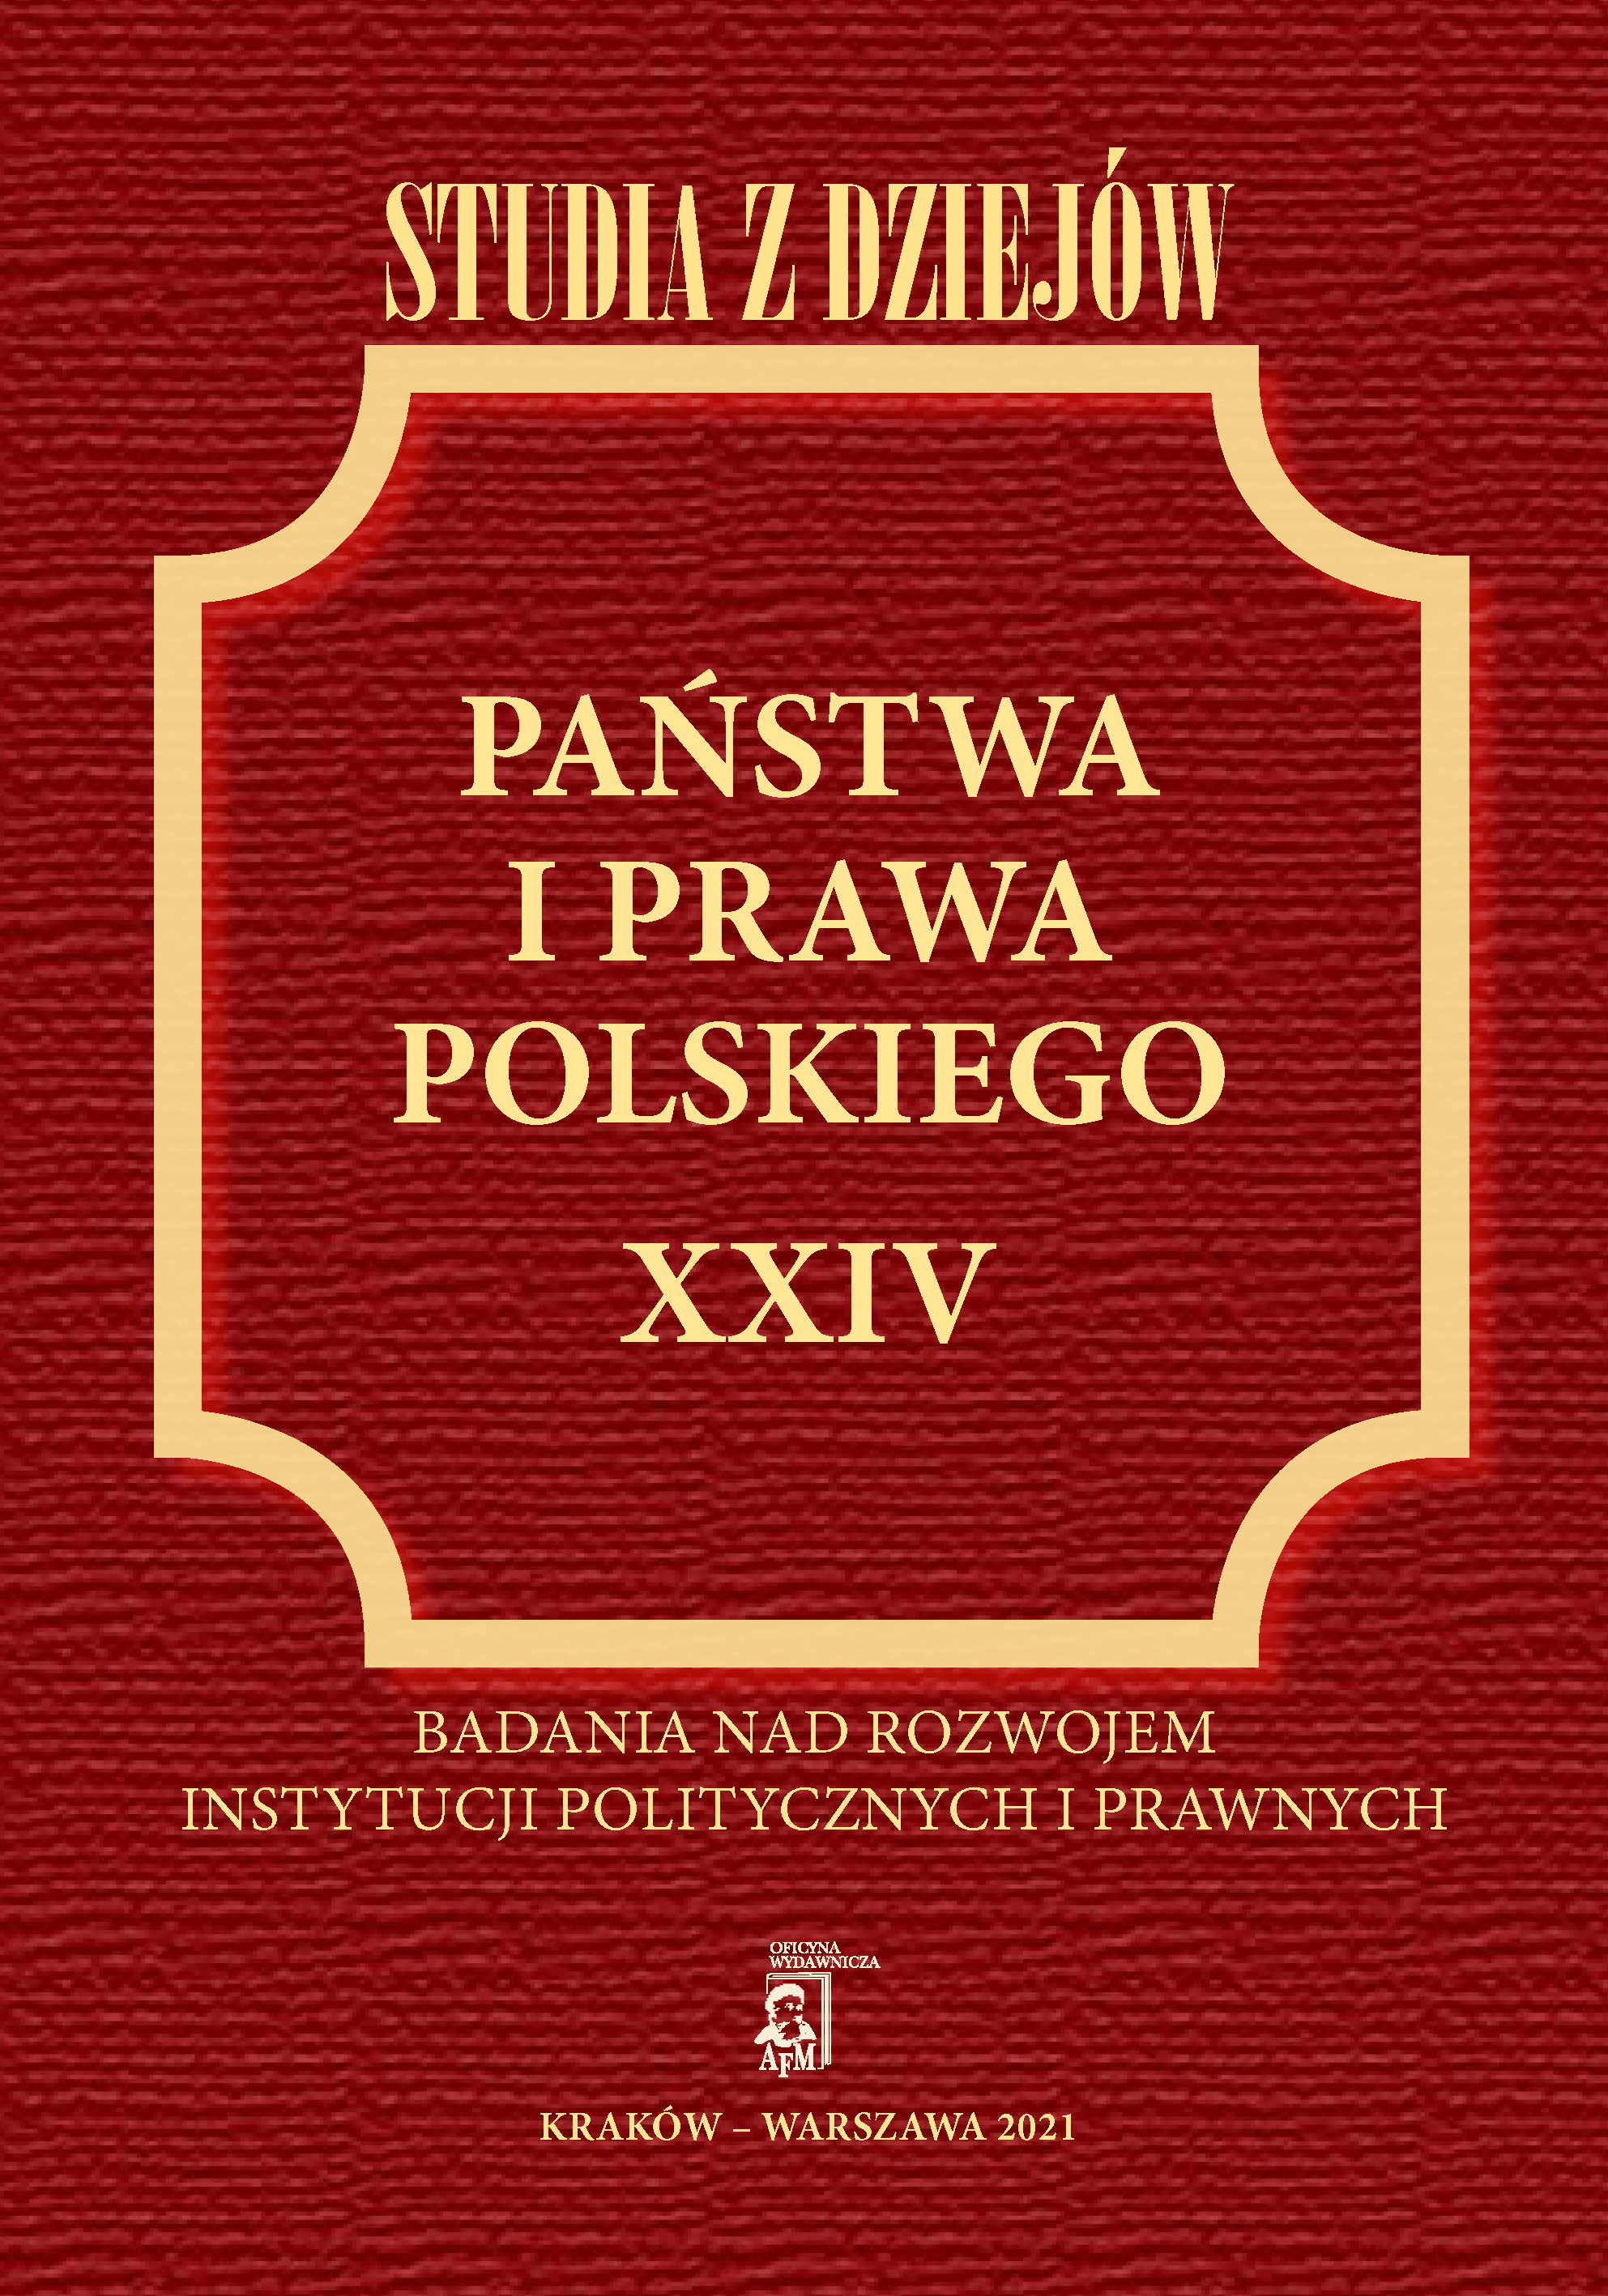 Profesora Stanisława Grodziskiego pielgrzymka do historii prawa – szkic naukowego (i nie tylko) portretu